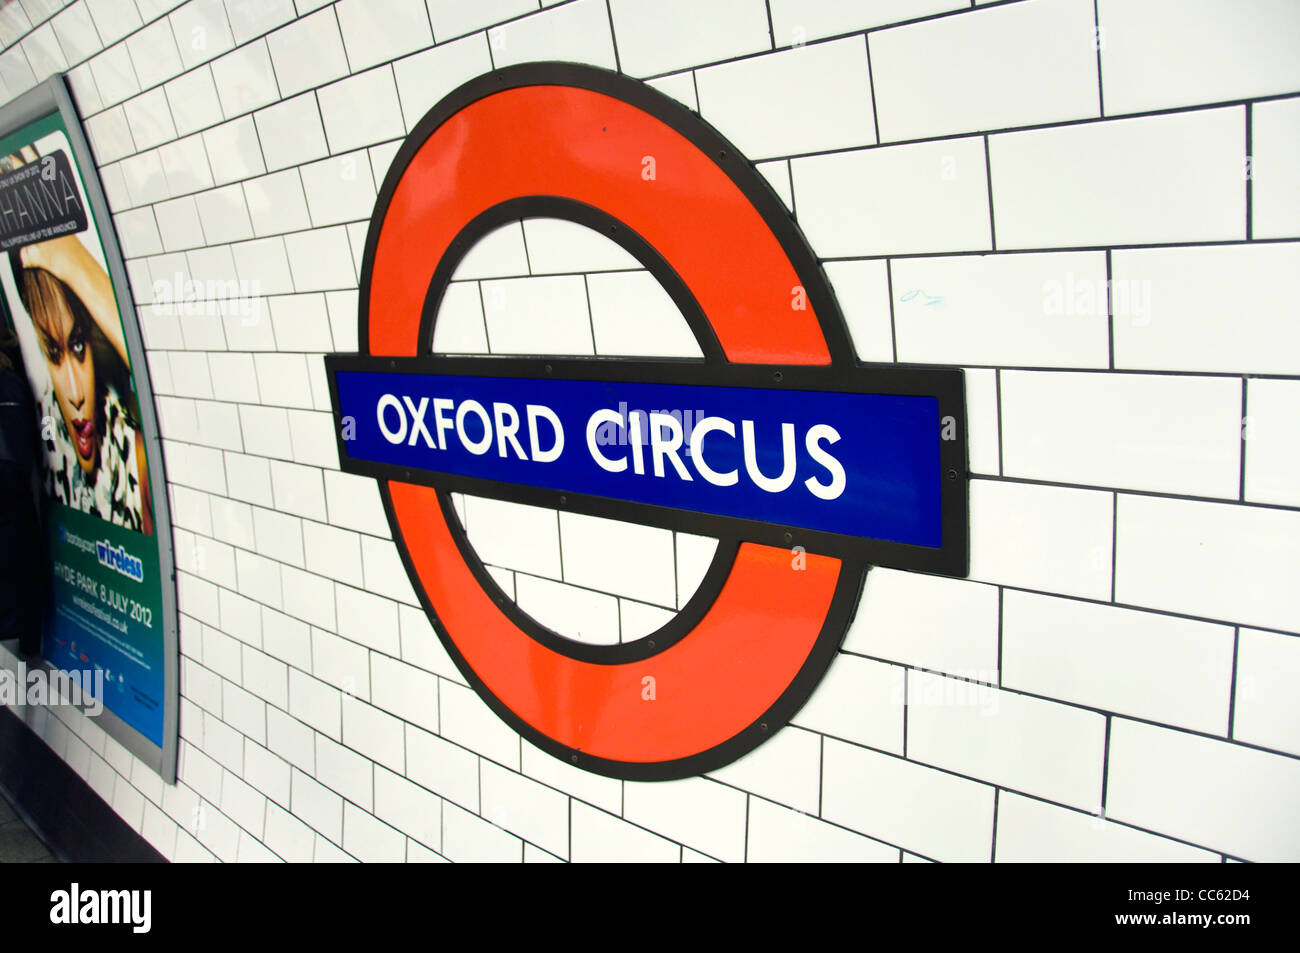 La station de métro Oxford Circus - Londres (UK) Banque D'Images